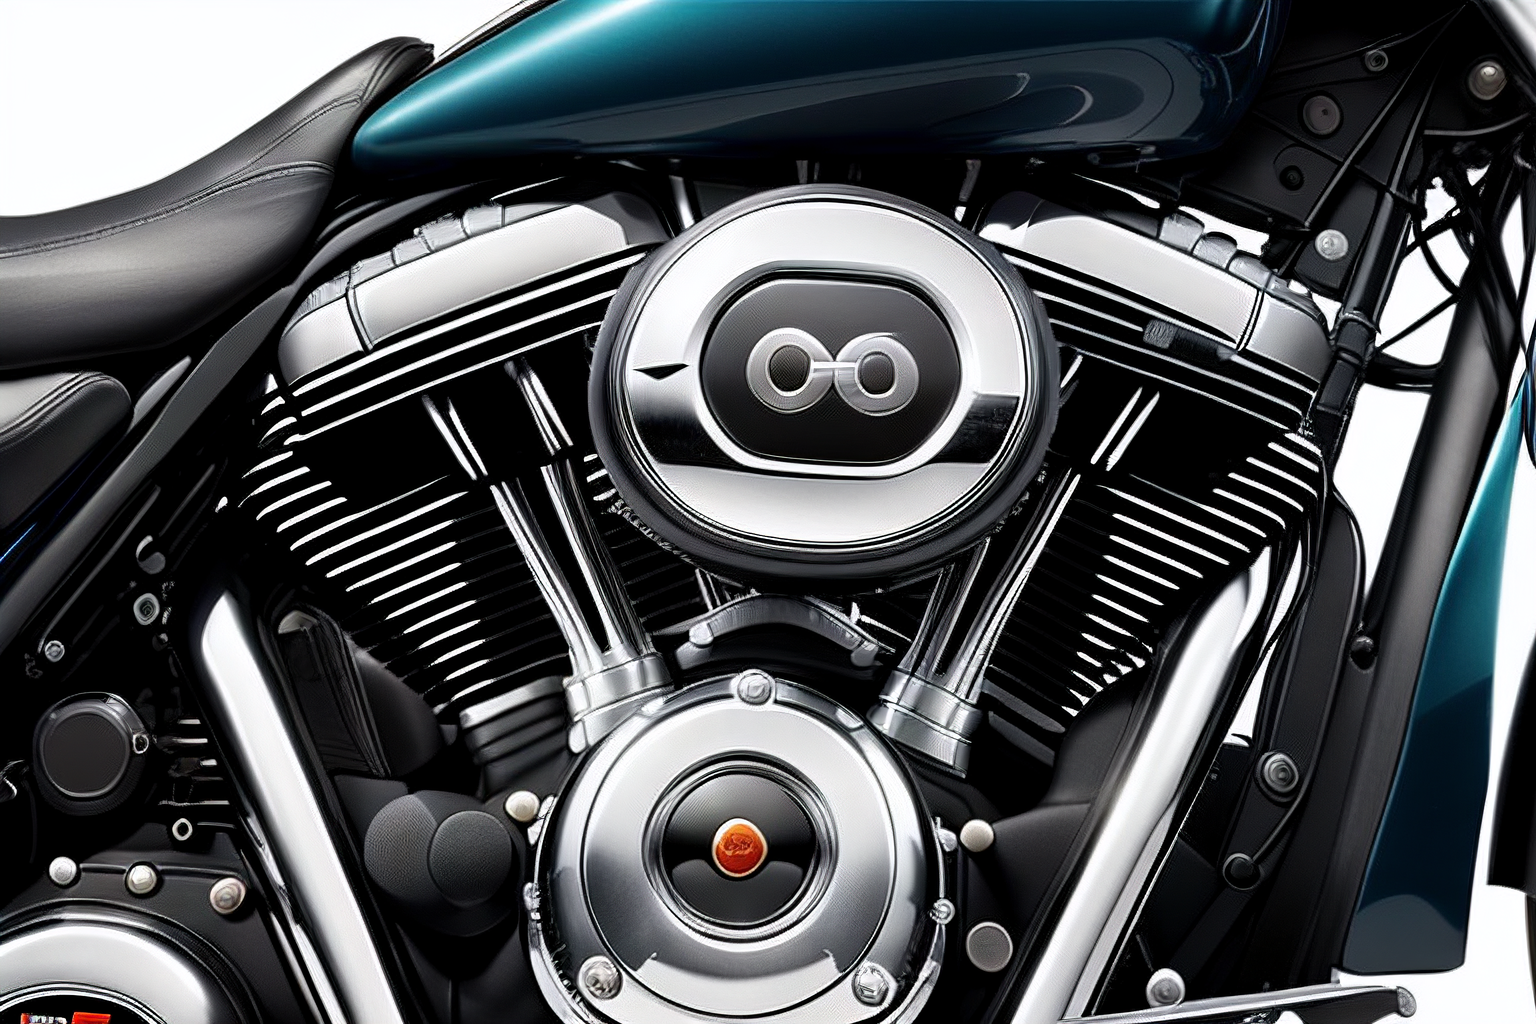 Harley Davidson Throttle Position Sensor Problems